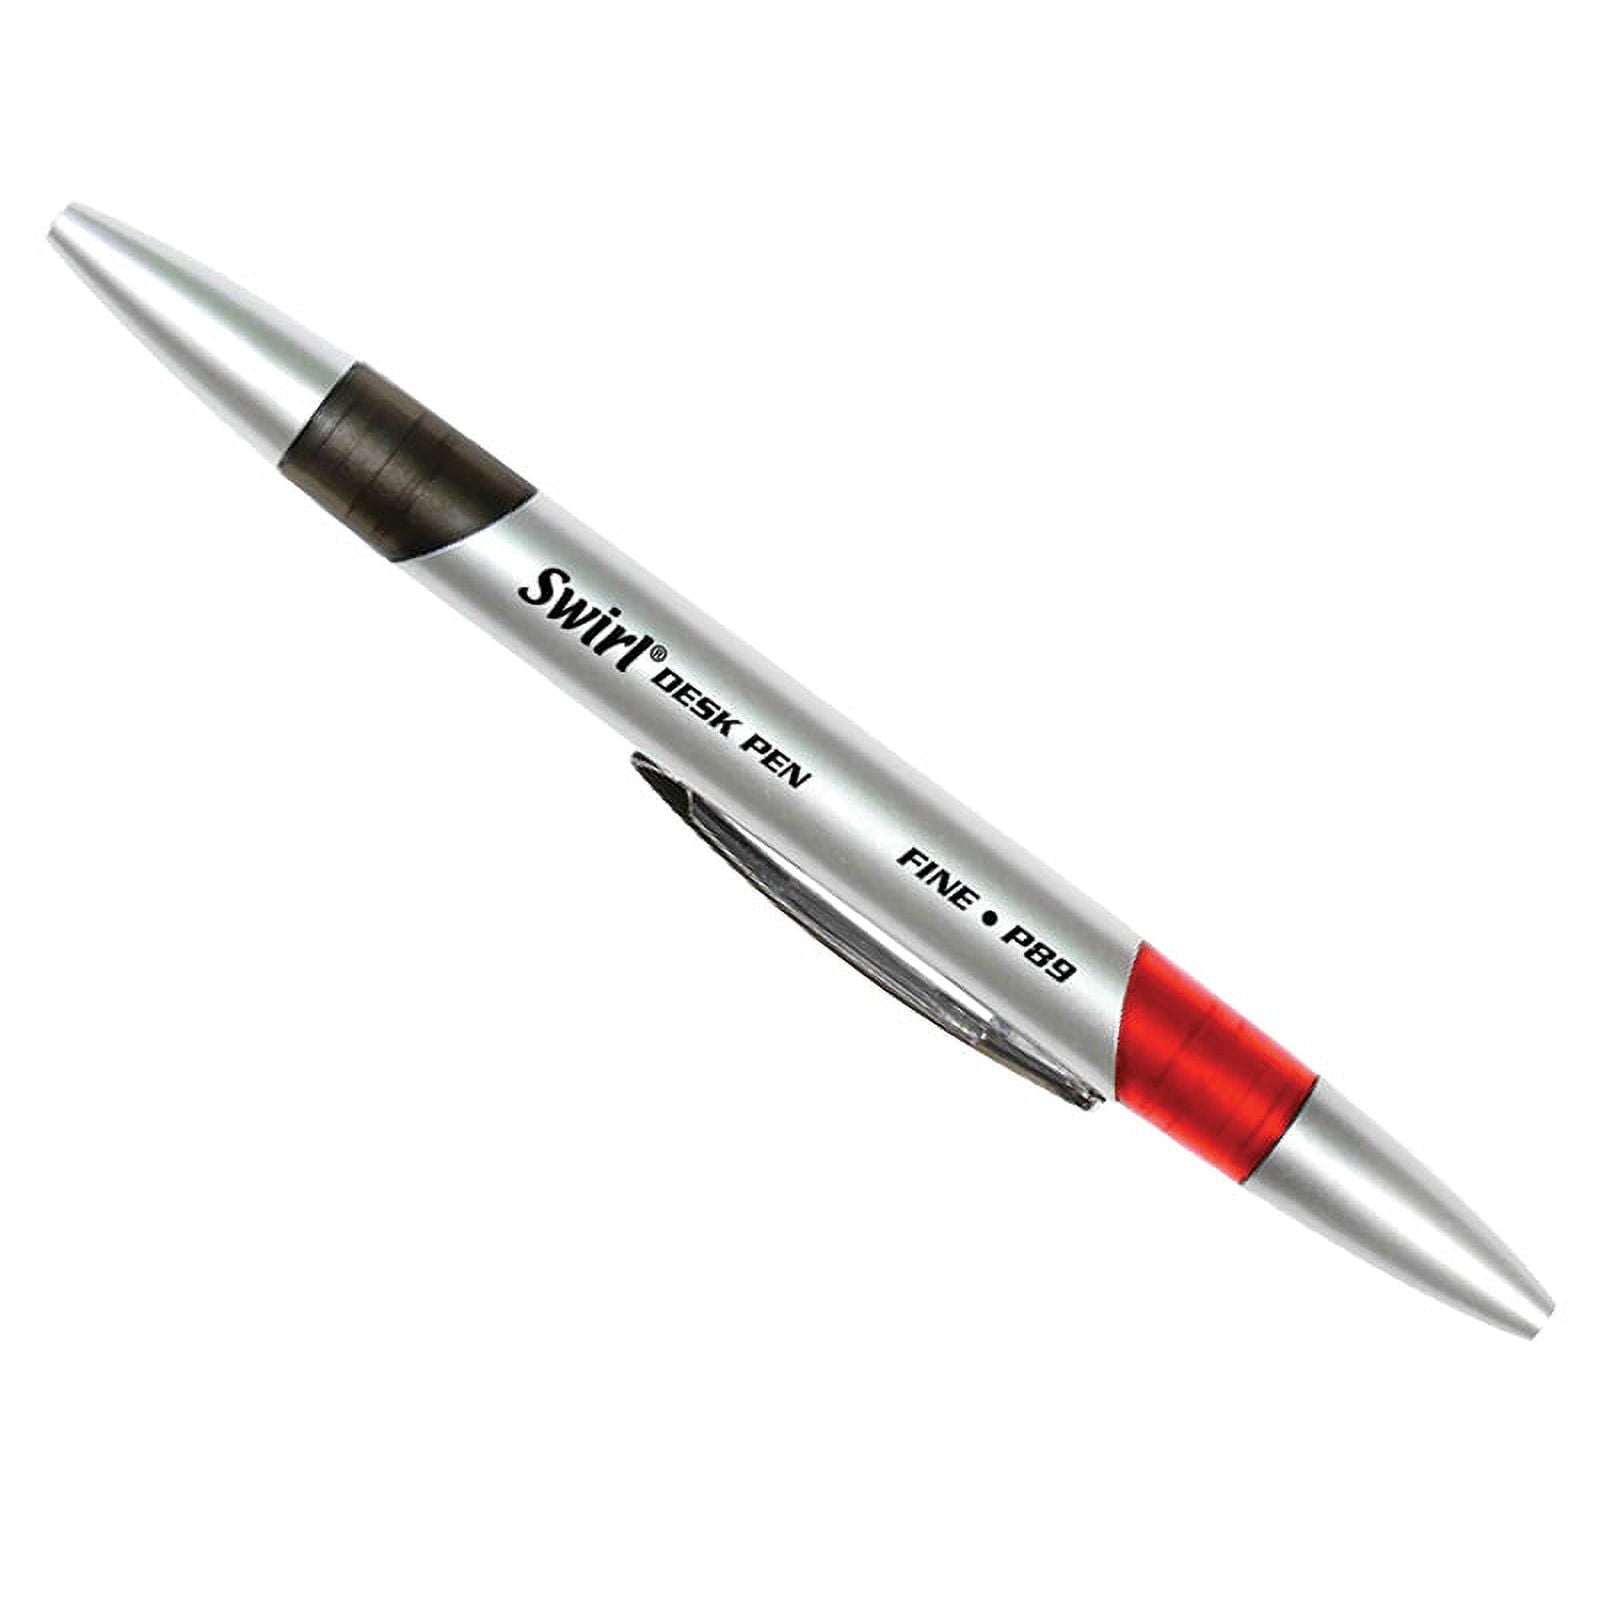 Color Block Pens - Set of 2 - Red Orange + Emerald – DesignWorks Ink